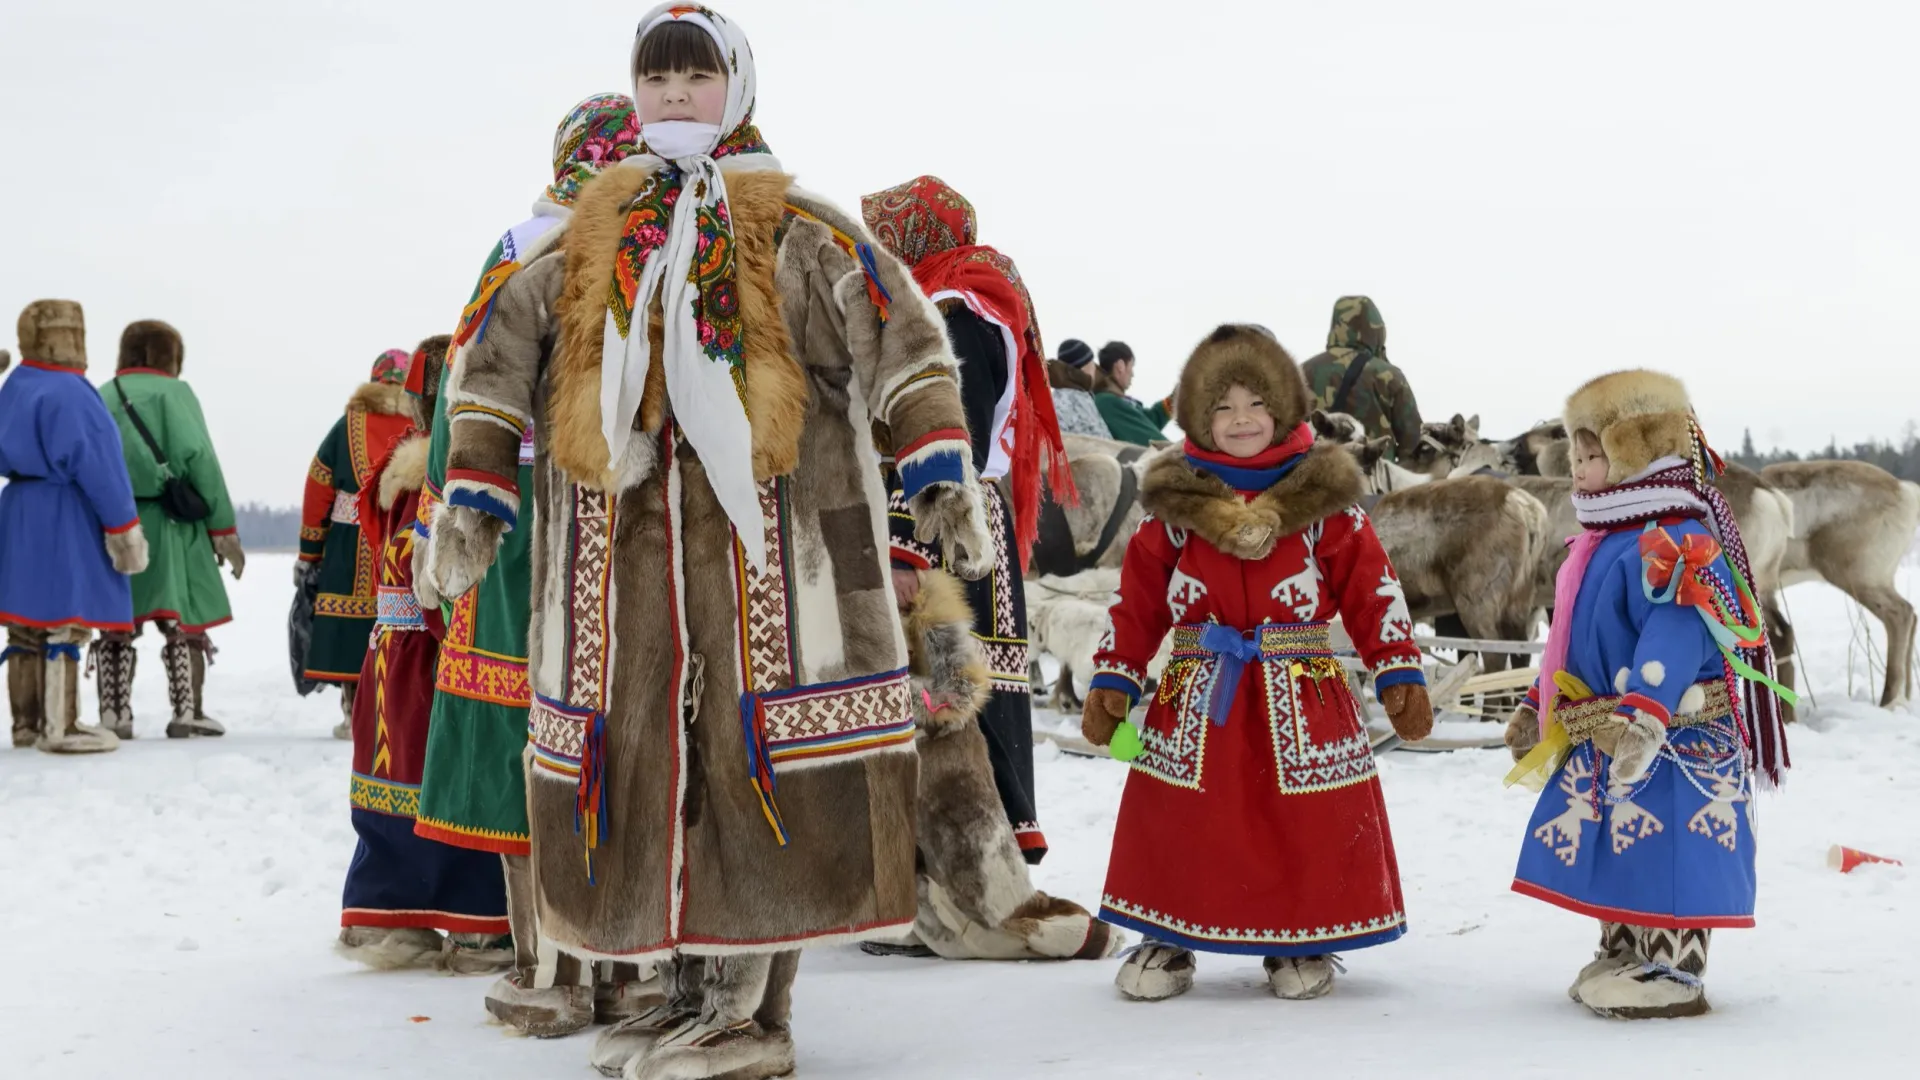 На праздник кочевники надевали лучшие наряды. Фото: Vladimir Kovalchuk / Shutterstock / Fotodom